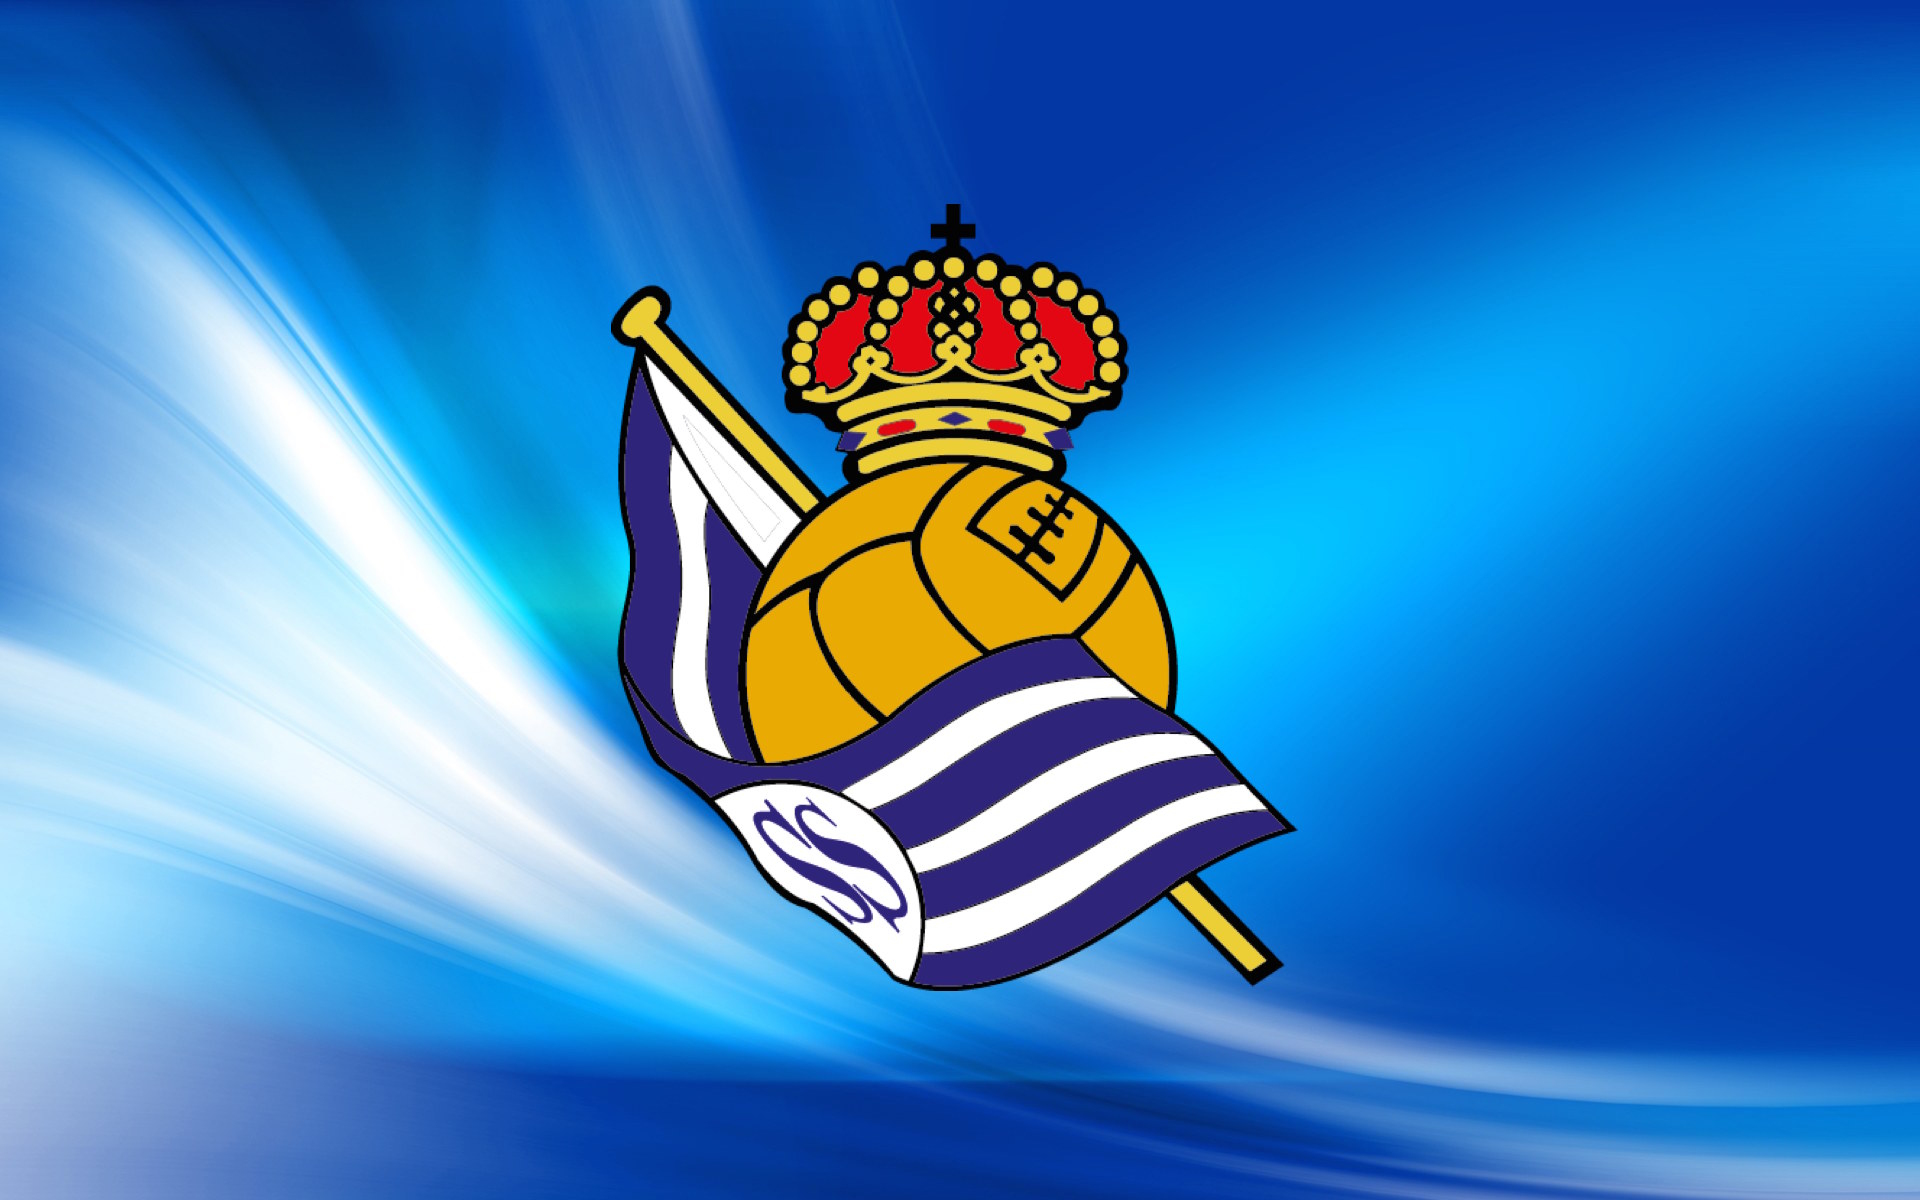 Giới thiệu câu lạc bộ Real Sociedad - Lịch sử, thành tích và các trận đấu kinh điển